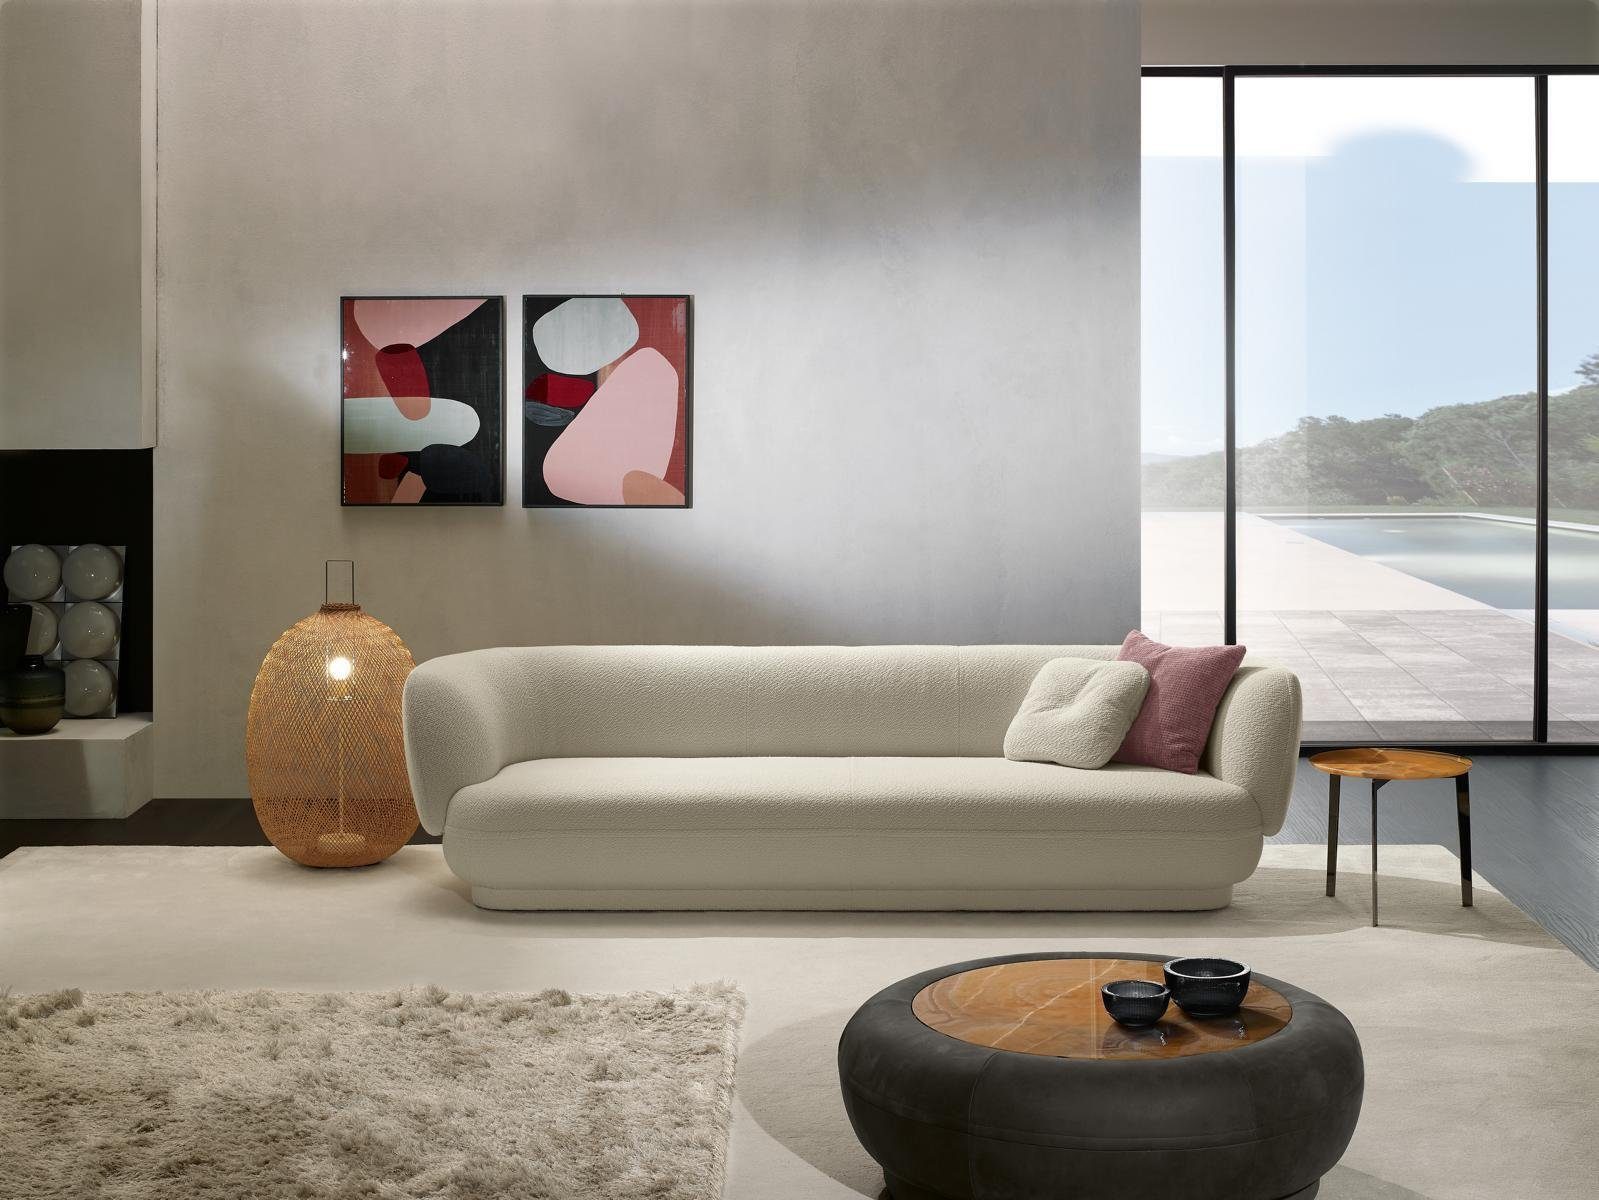 JVmoebel Sofa Luxus Weiß Design Europe in Modern Möbel, Design Sofas Sofa 3 Made Sitzer Dreisitzer